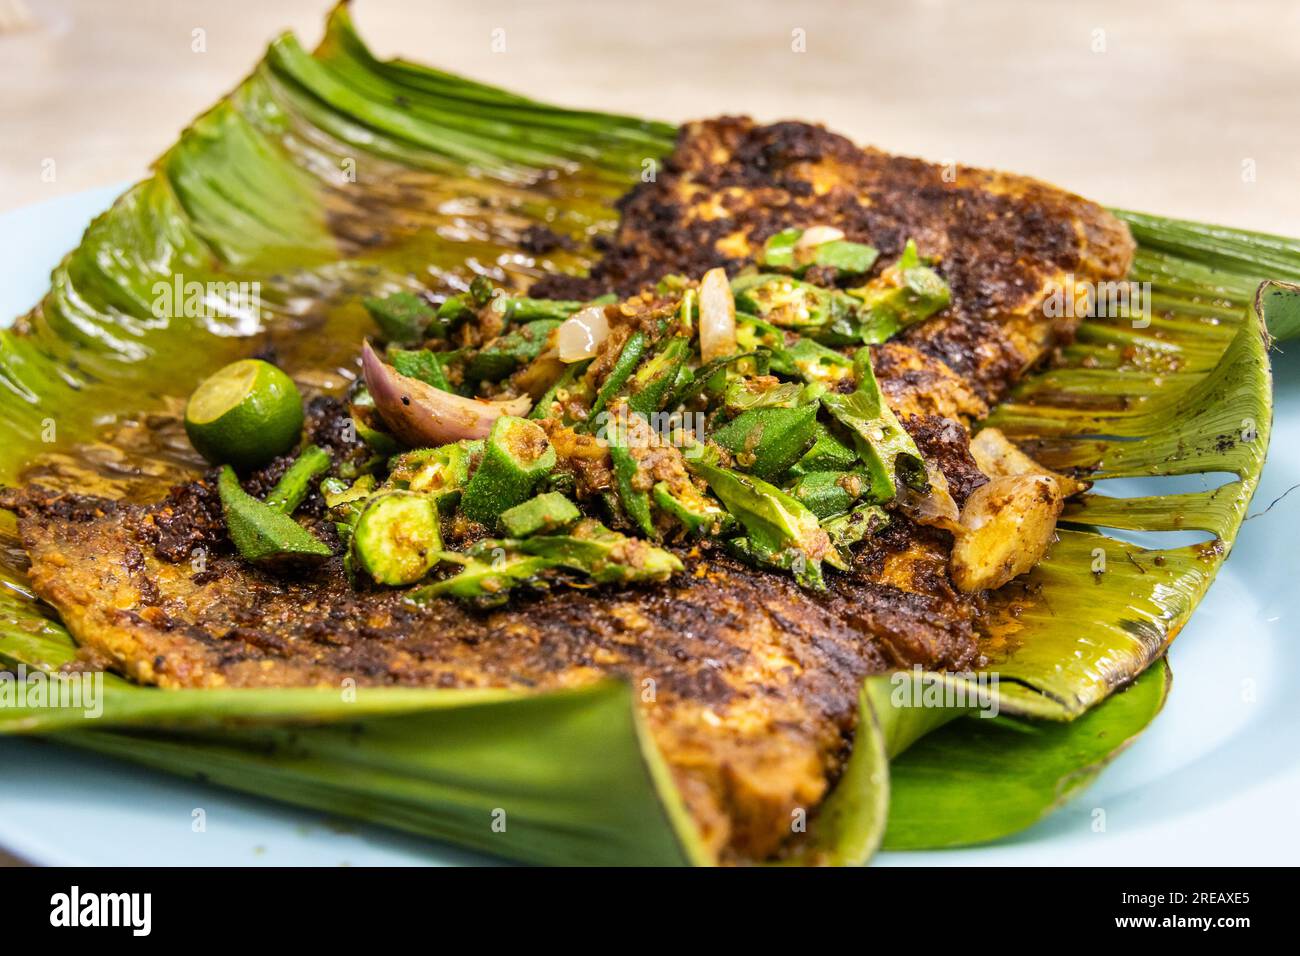 Gros plan de poissons raies grillés aux épices garnis de légumes d'okra sur des feuilles de bananier, plats populaires en Malaisie Banque D'Images